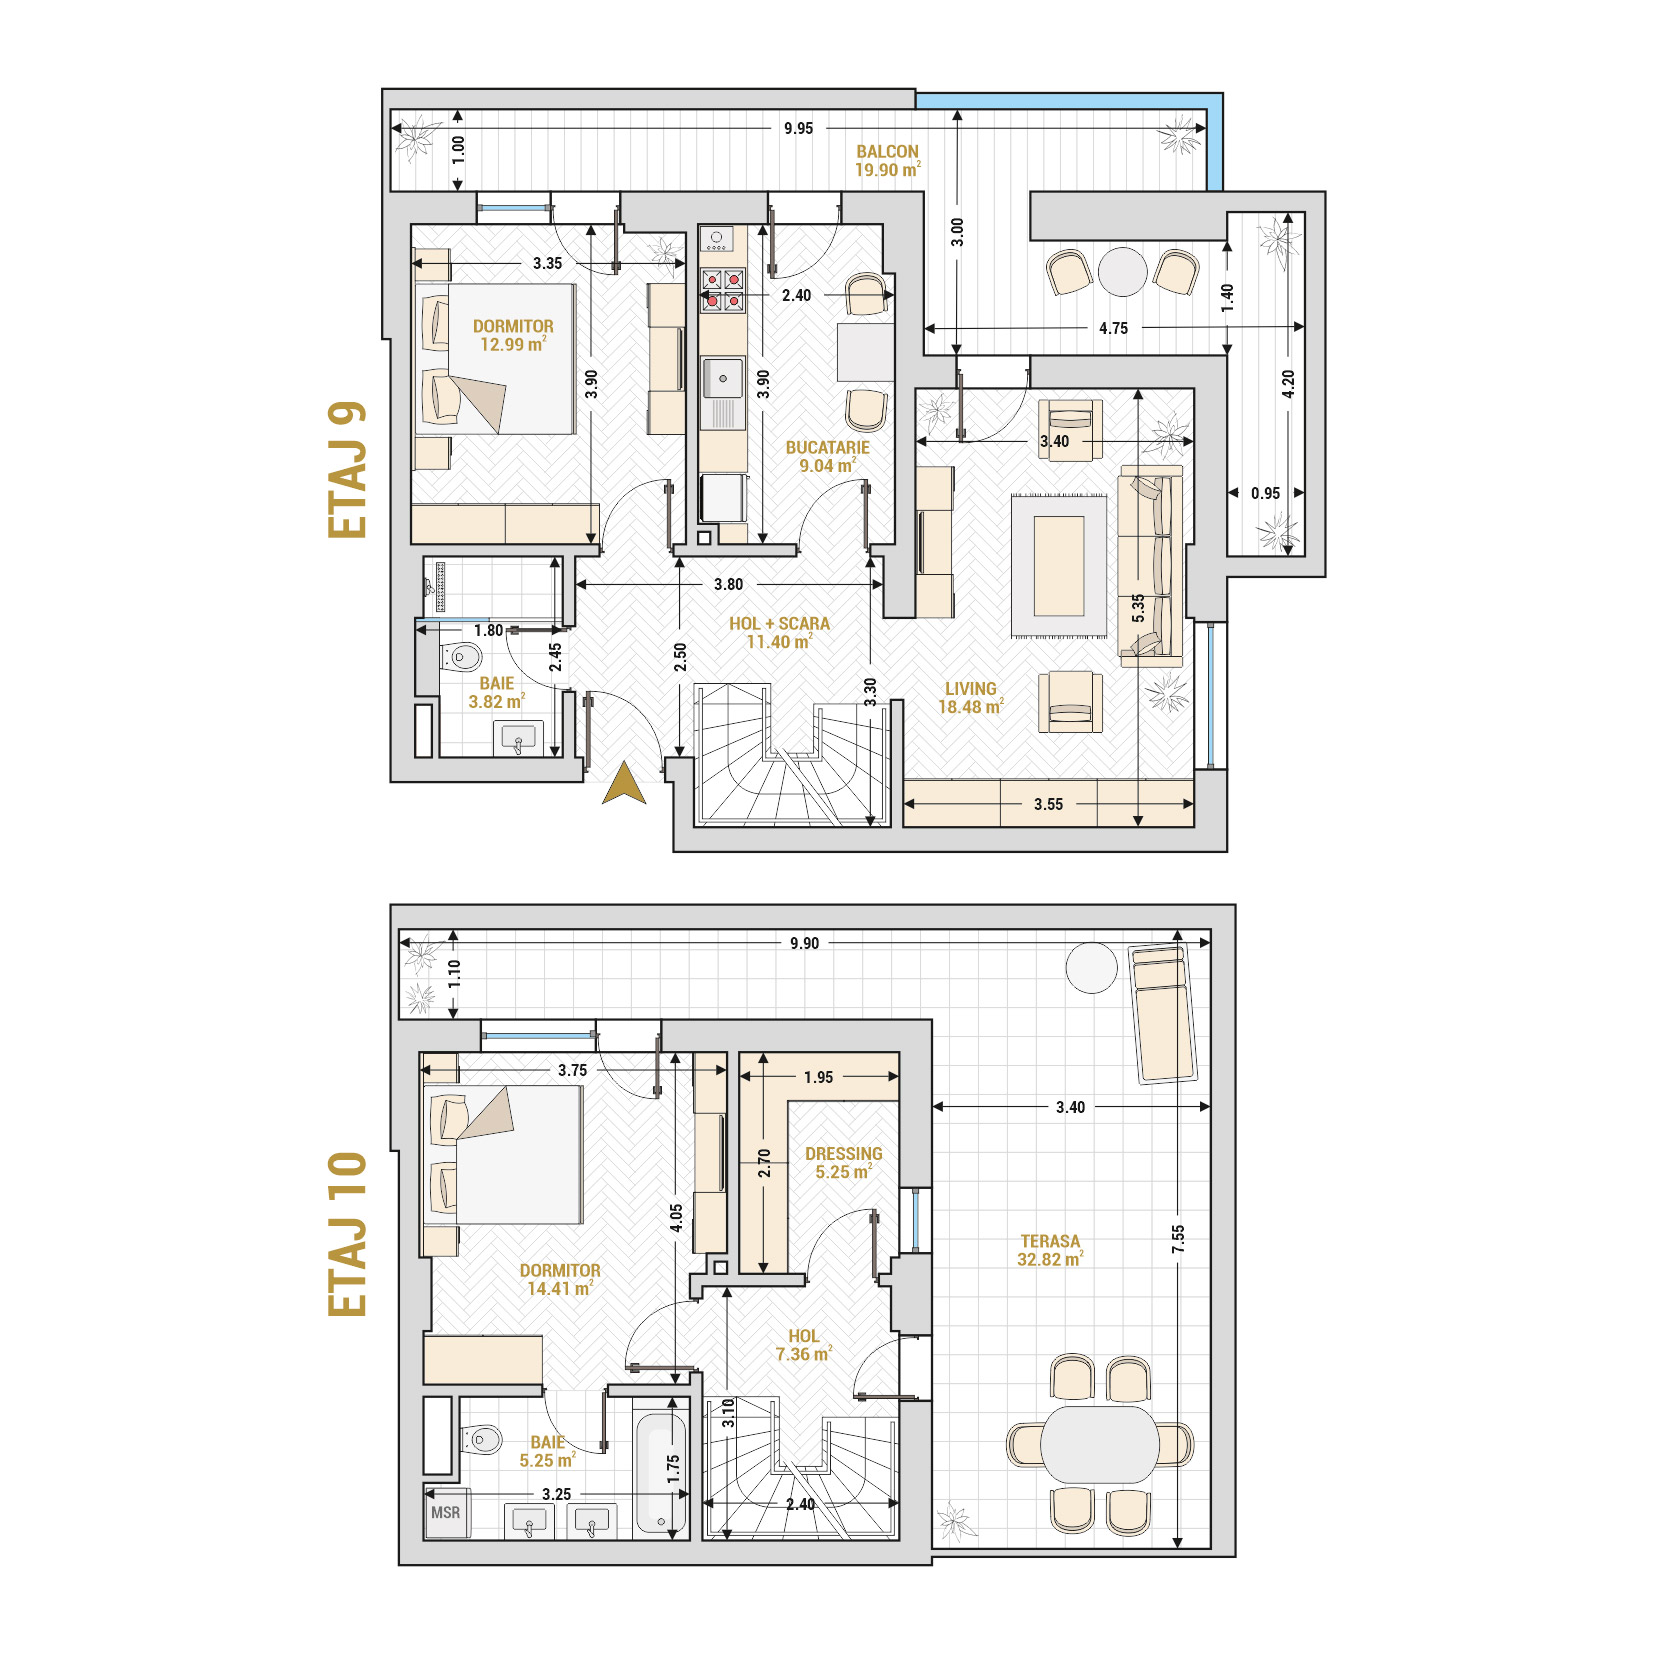 Penthouse 3 Camere Tip 2 Corp 3 - Drumul Taberei Residence - Apartamente de vanzare Bucuresti - Suprafata utila totala - 140.72 mp